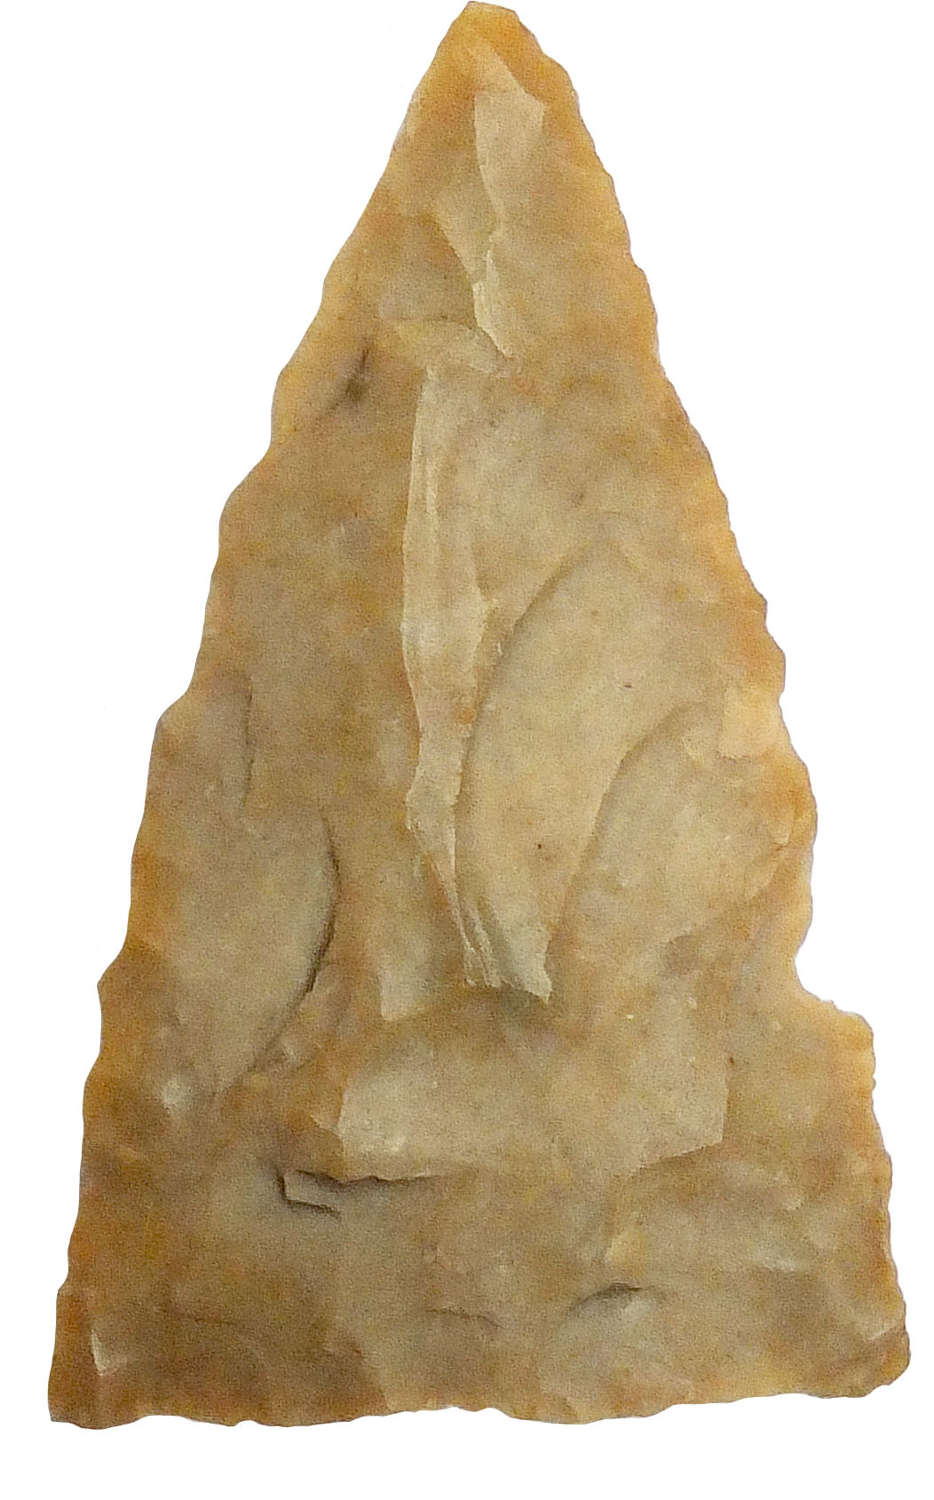 A triangular fawn flint arrowhead possibly American Indian